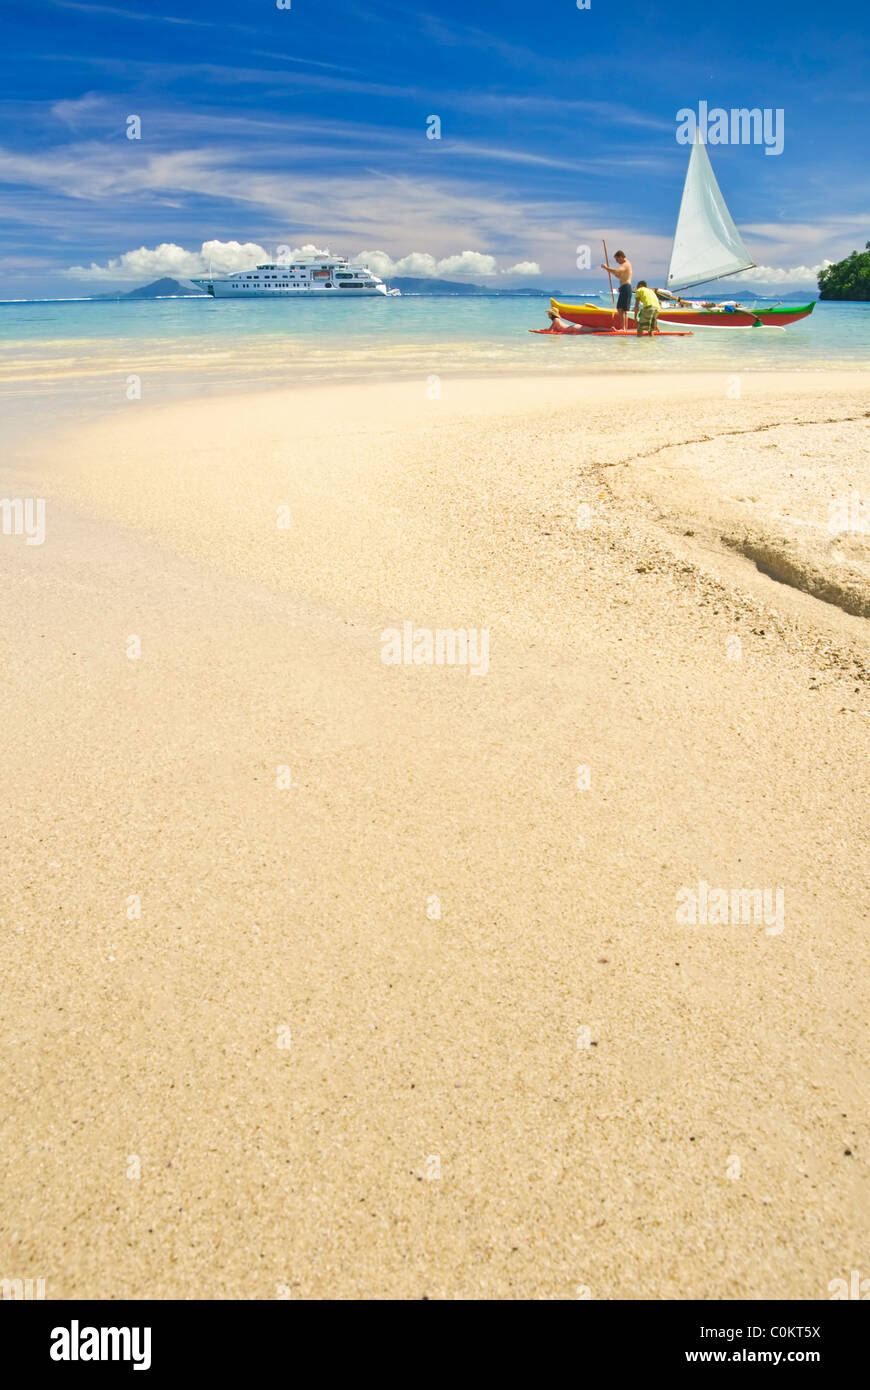 Outrigger Canoe sulla spiaggia di sabbia bianca nel Pacifico del sud. Huahine, Polinesia Francese Foto Stock